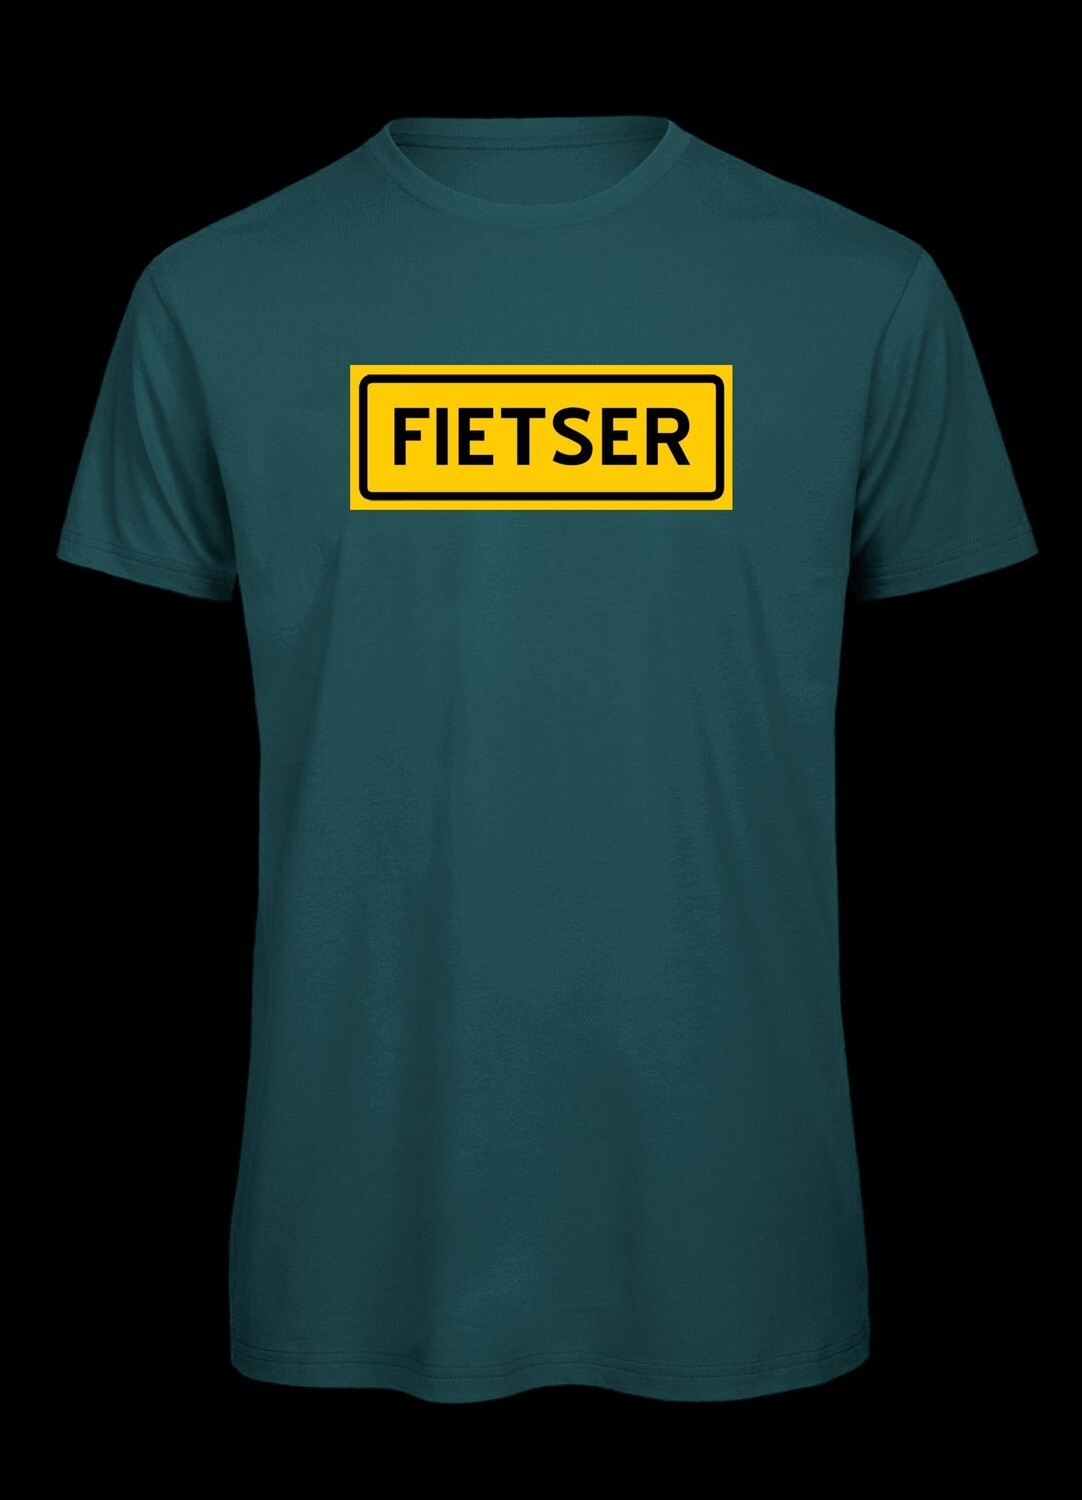 Fietser, Radfahrer T-Shirt